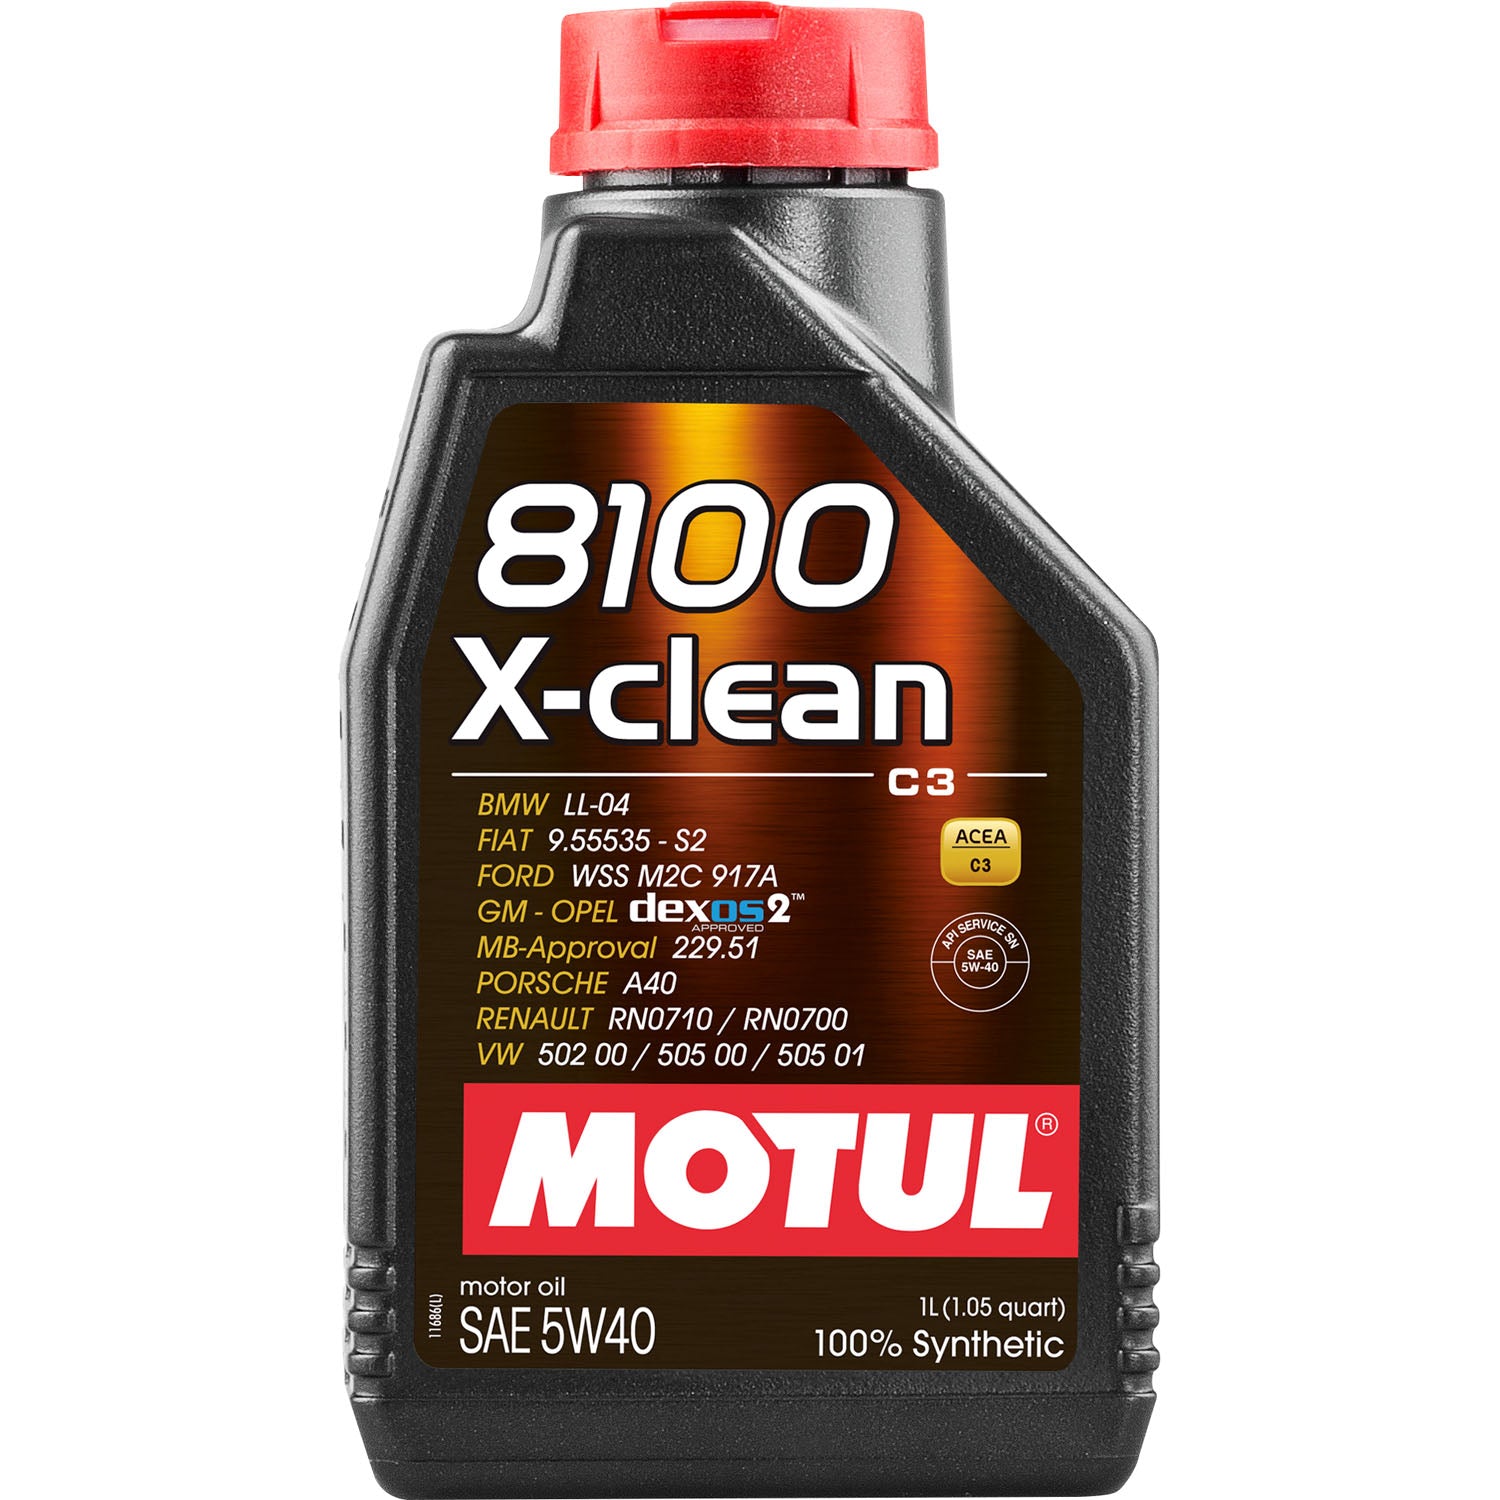 Motul 8100 X-Clean Motor Oil 5W40 - 1 Liter